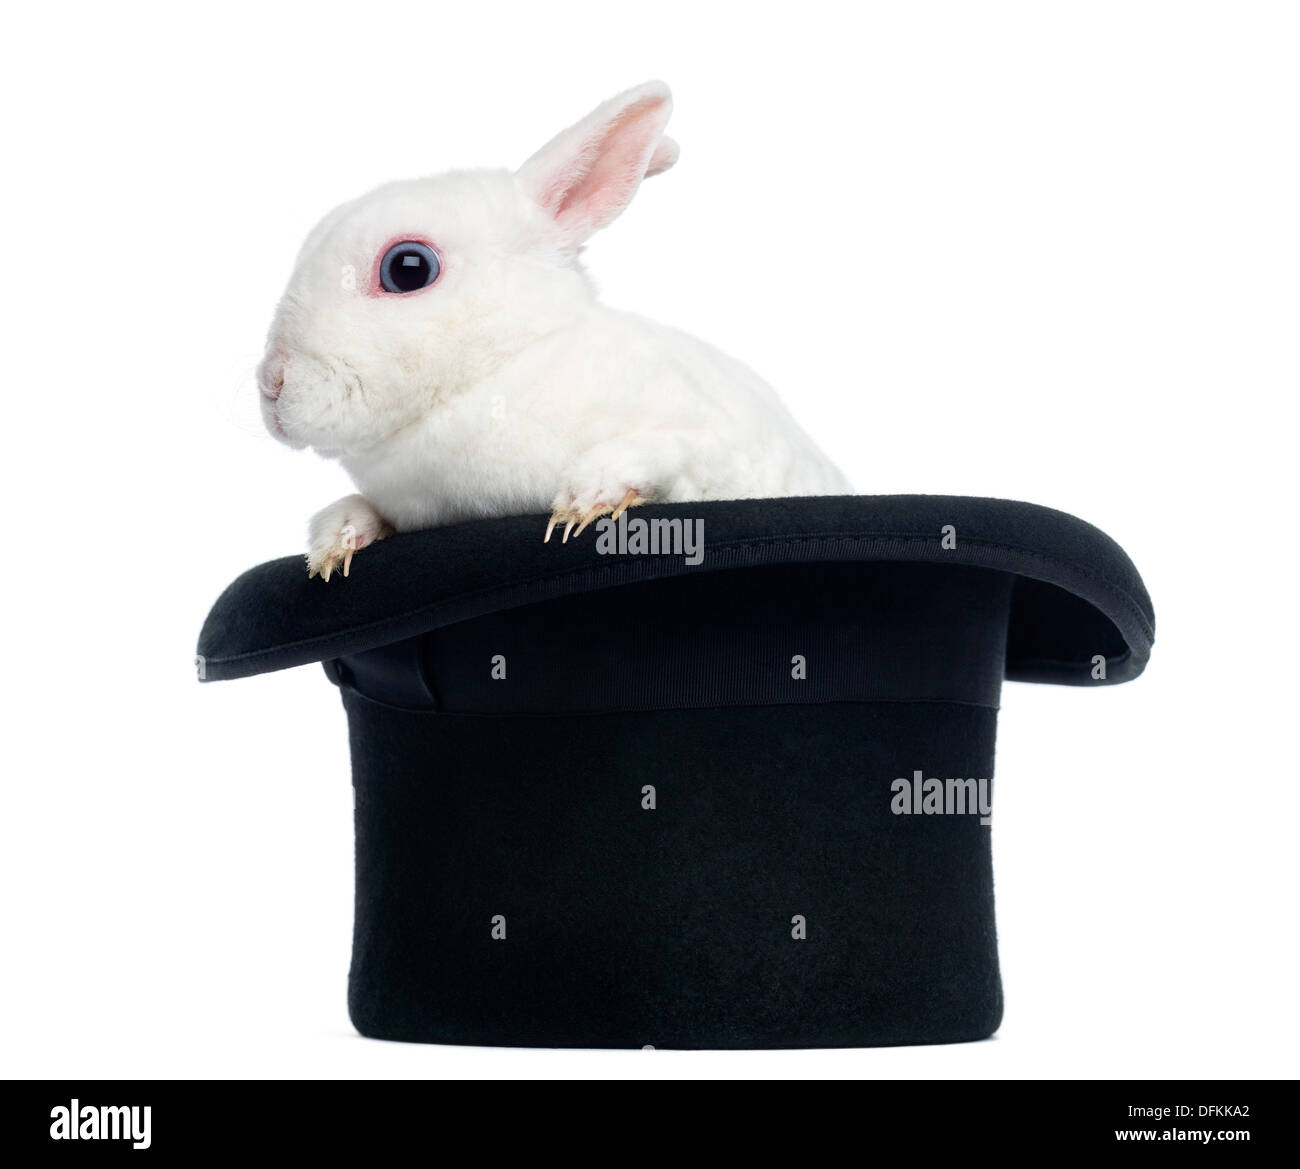 Cappello da coniglio immagini e fotografie stock ad alta risoluzione - Alamy